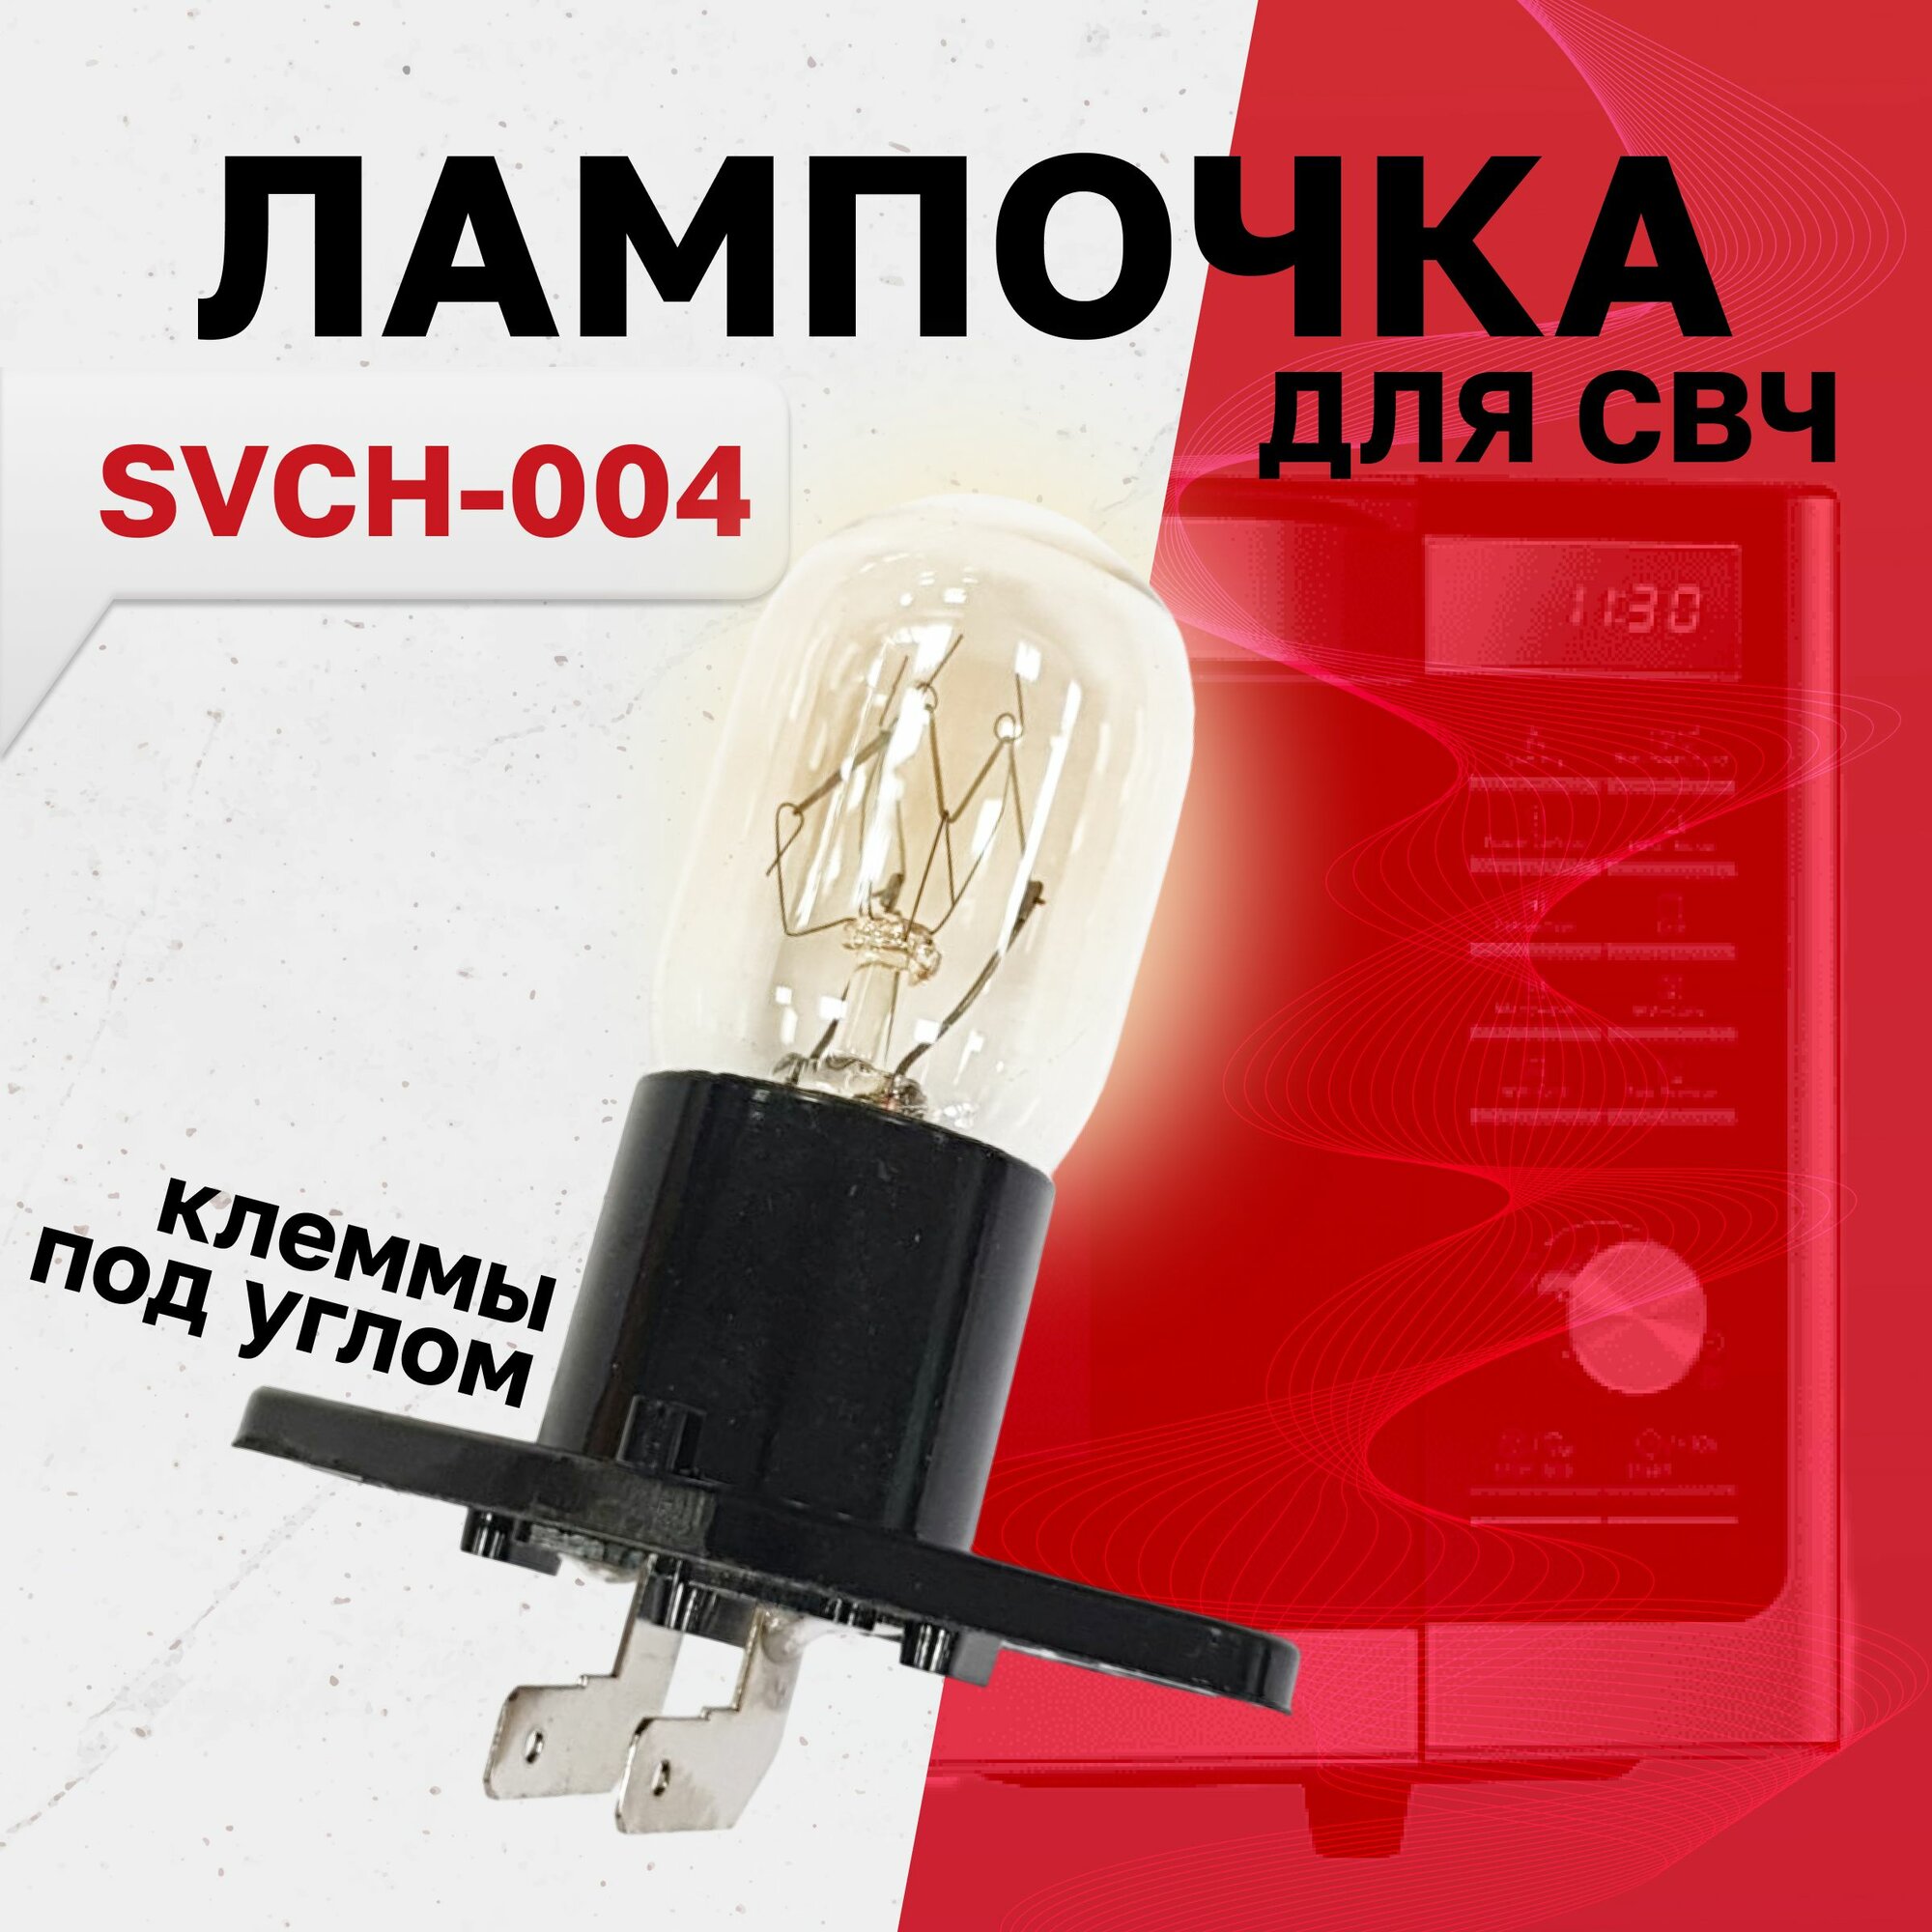 SVCH-004, Лампочка подсветки микроволной (СВЧ) печи, Г-образные контакты, 20Вт